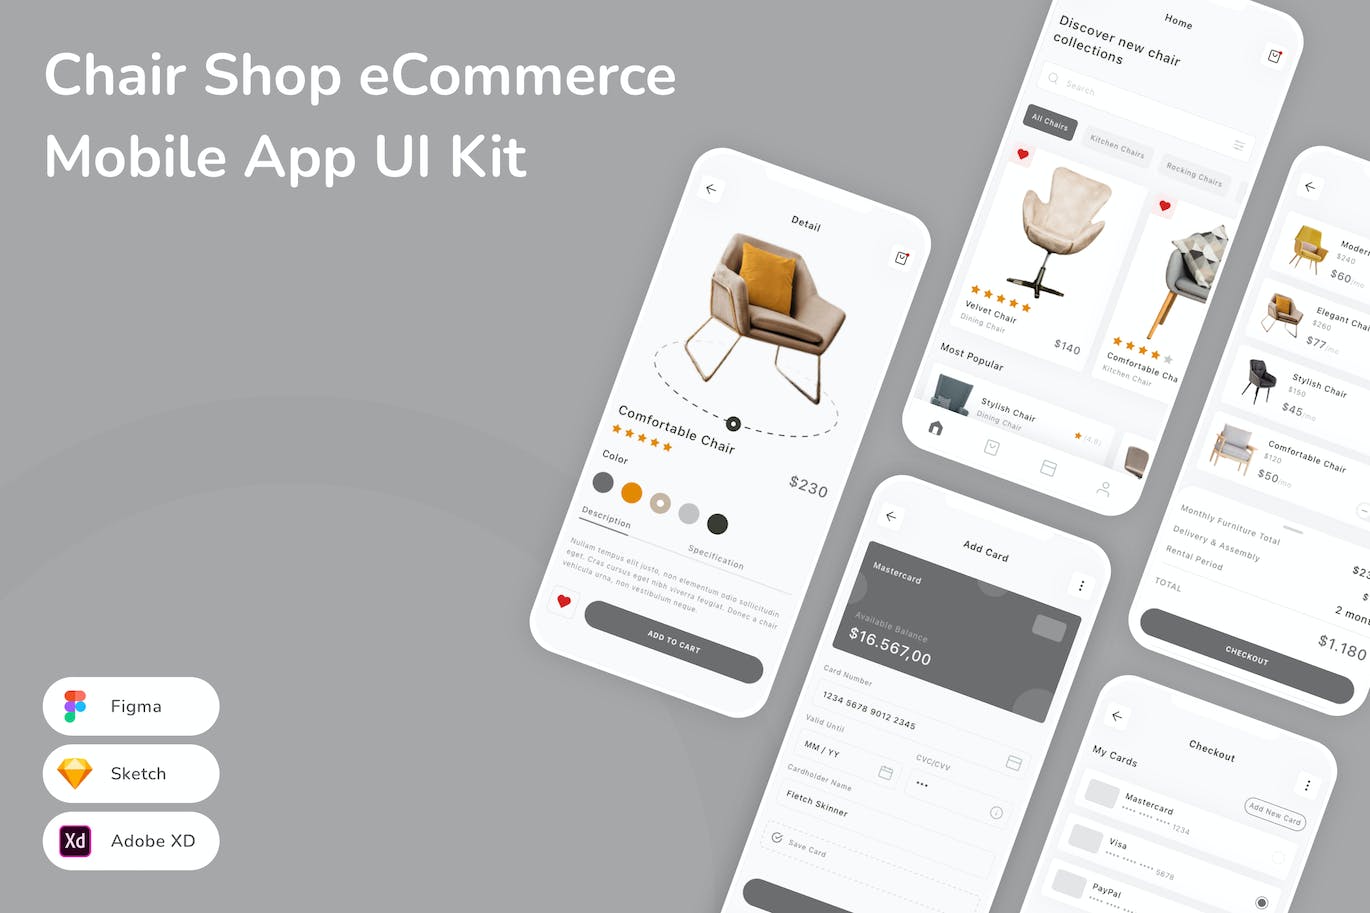 椅子店电子商务移动应用App UI Kit (SKETCH,FIG,XD)